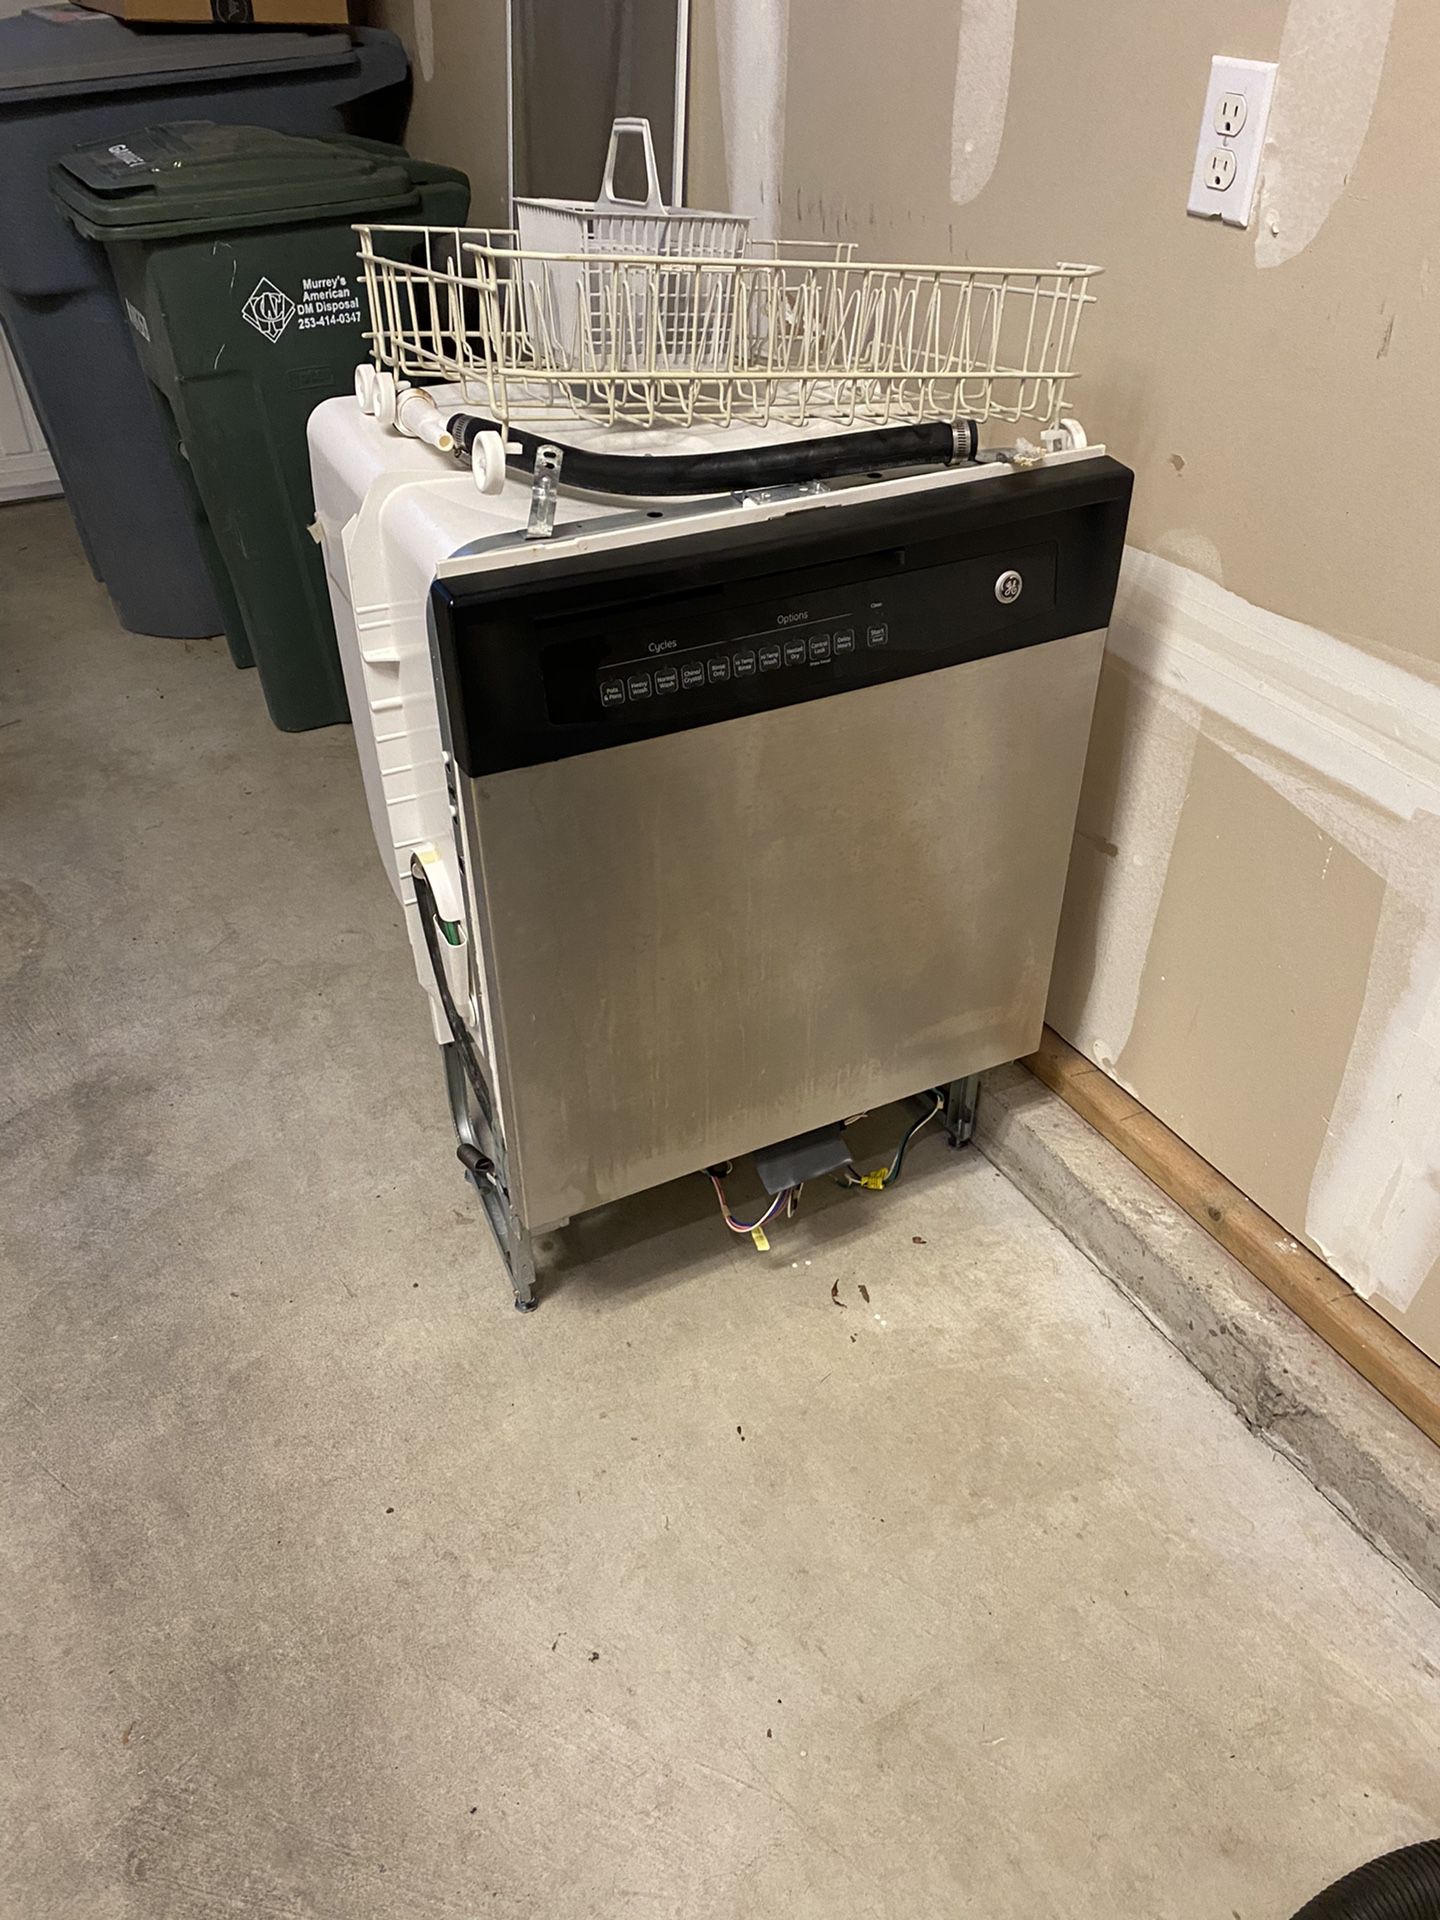 Free GE dishwasher